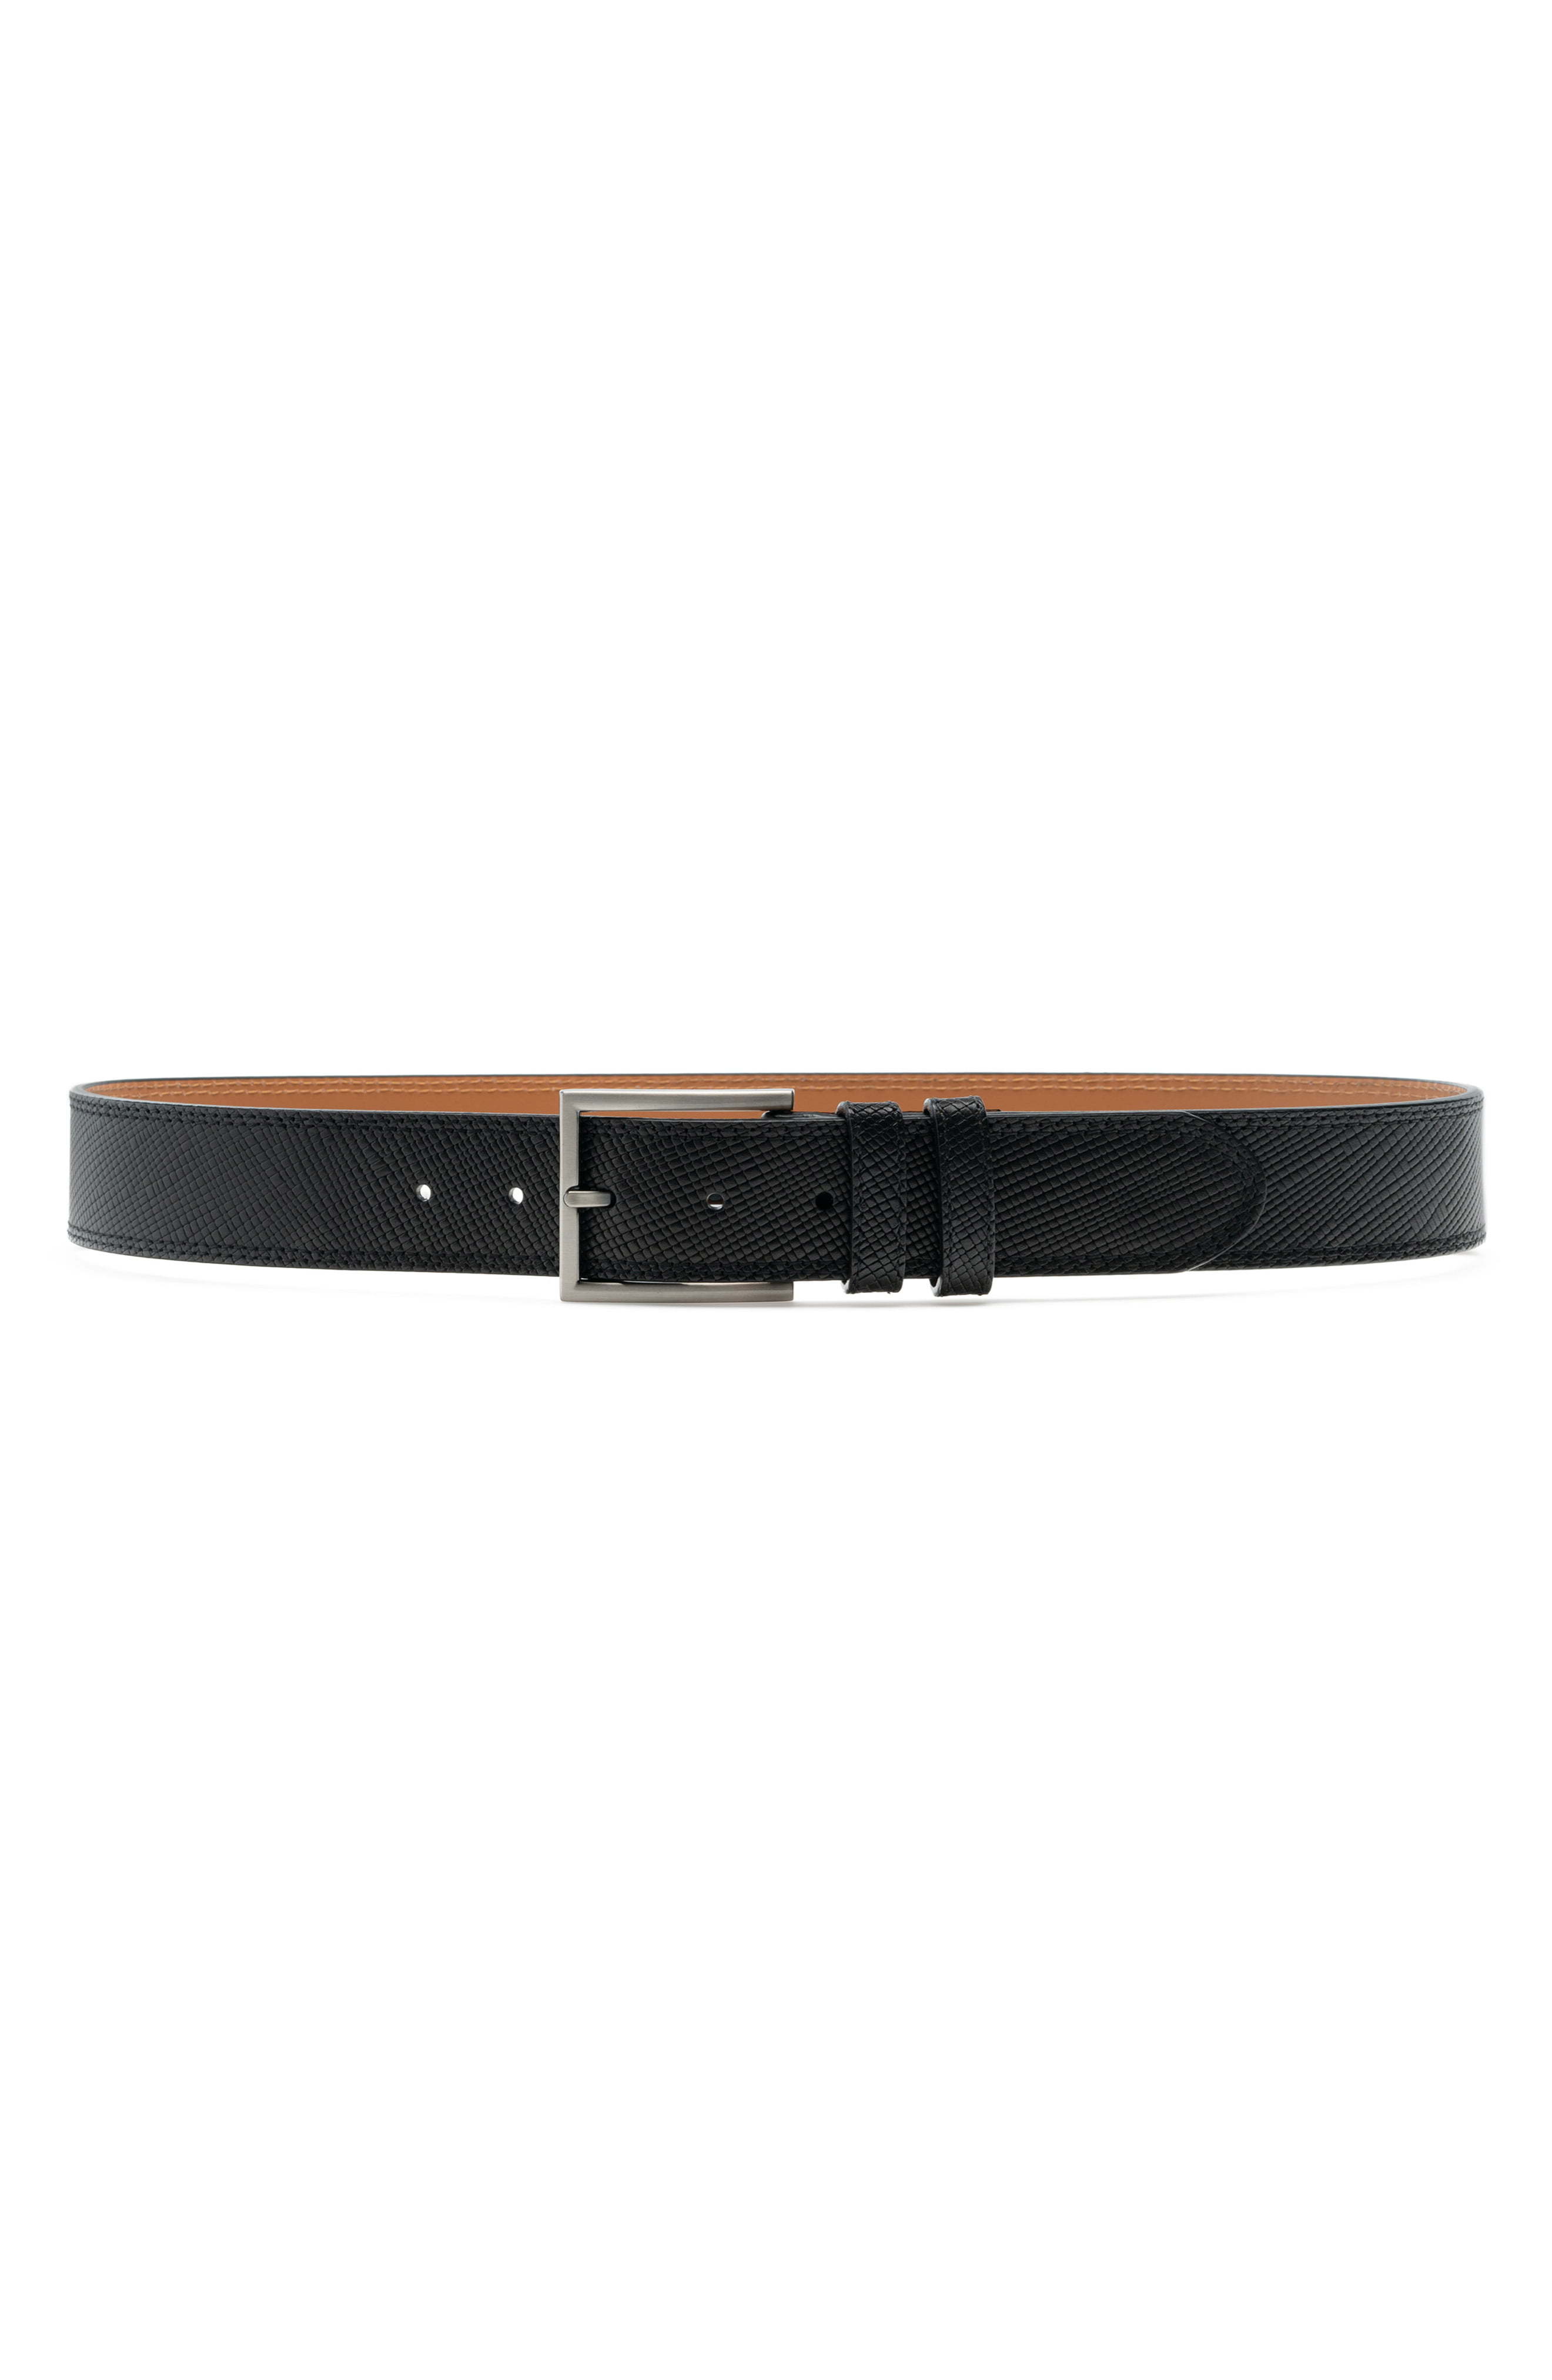 Magnanni Eastwood Pebble Leather Belt, $135 | Nordstrom | Lookastic